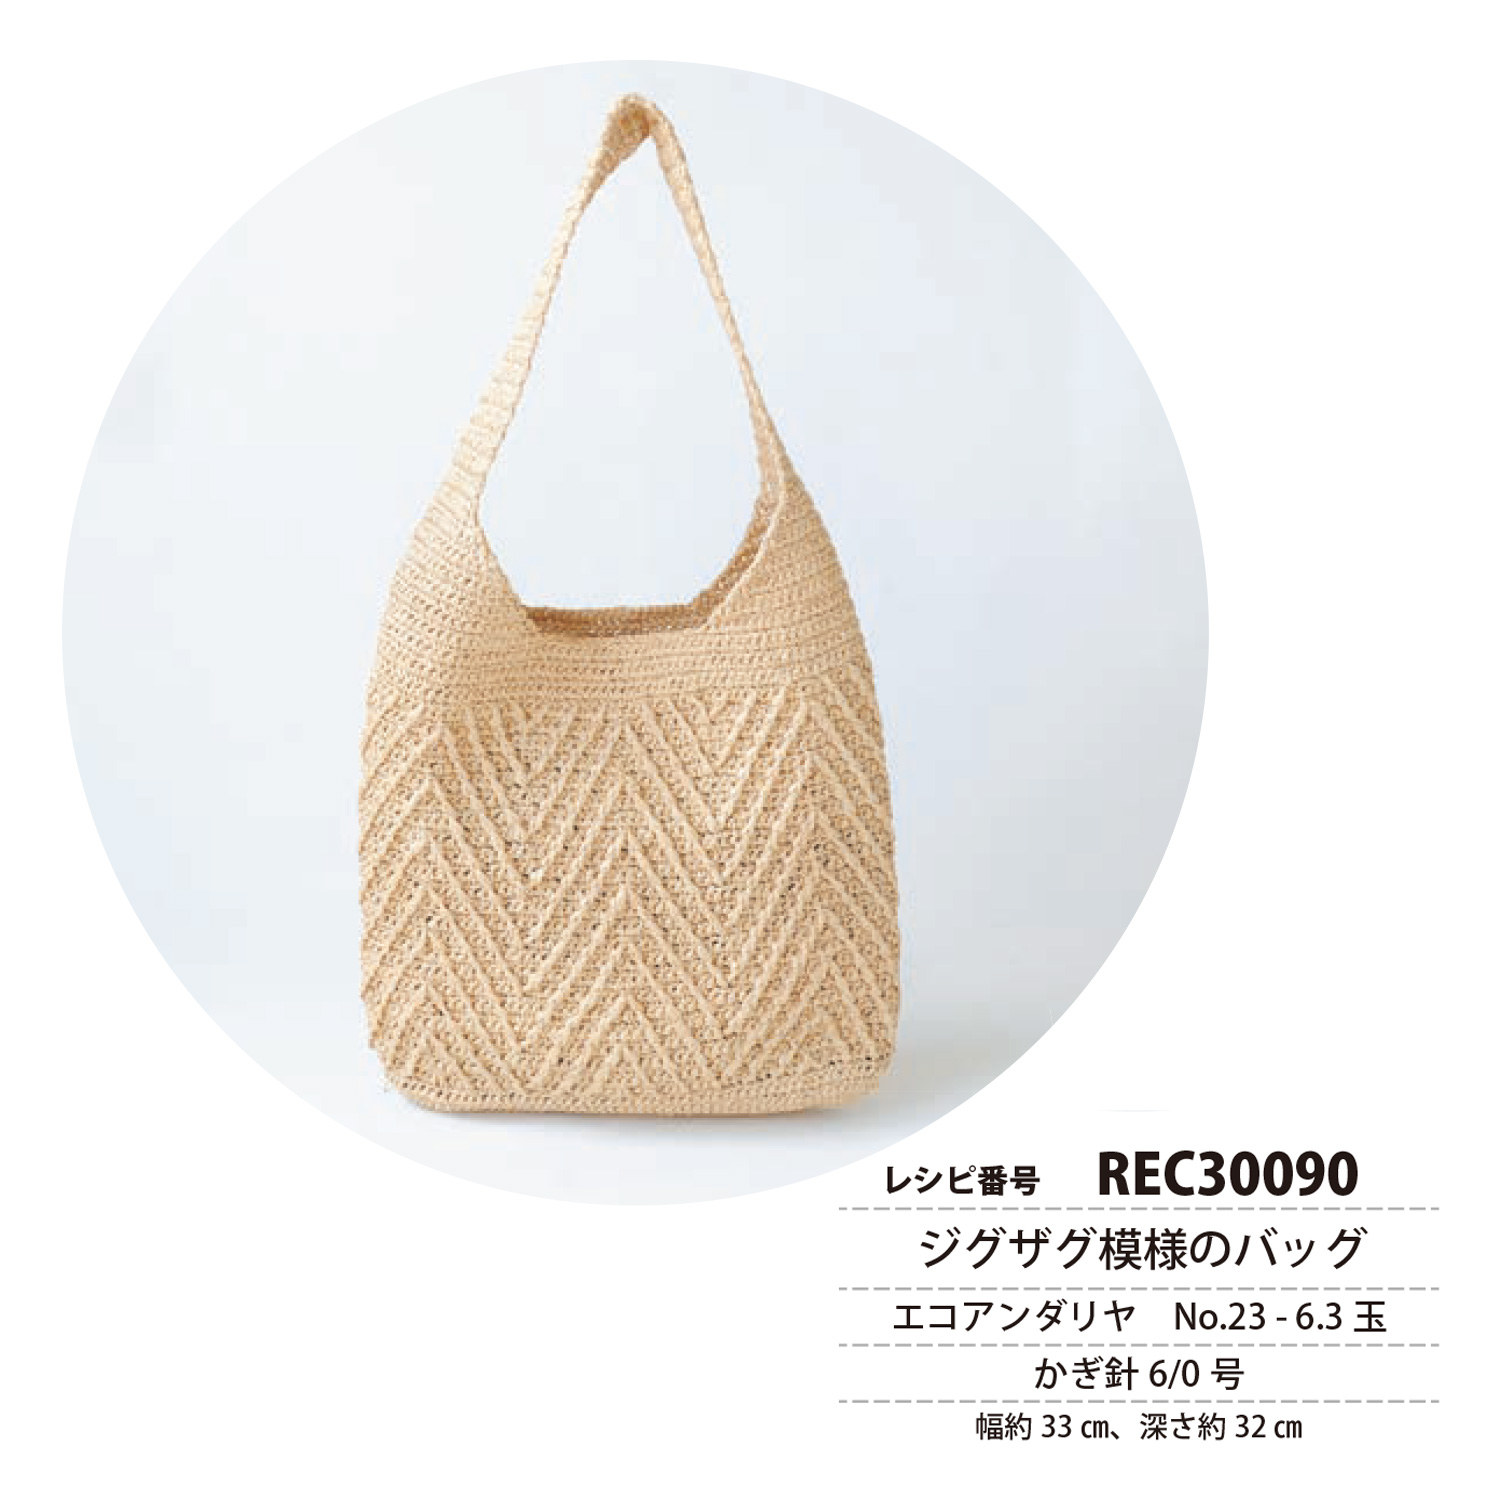 REC30090 Zigzag pattern bag recipe (pcs)